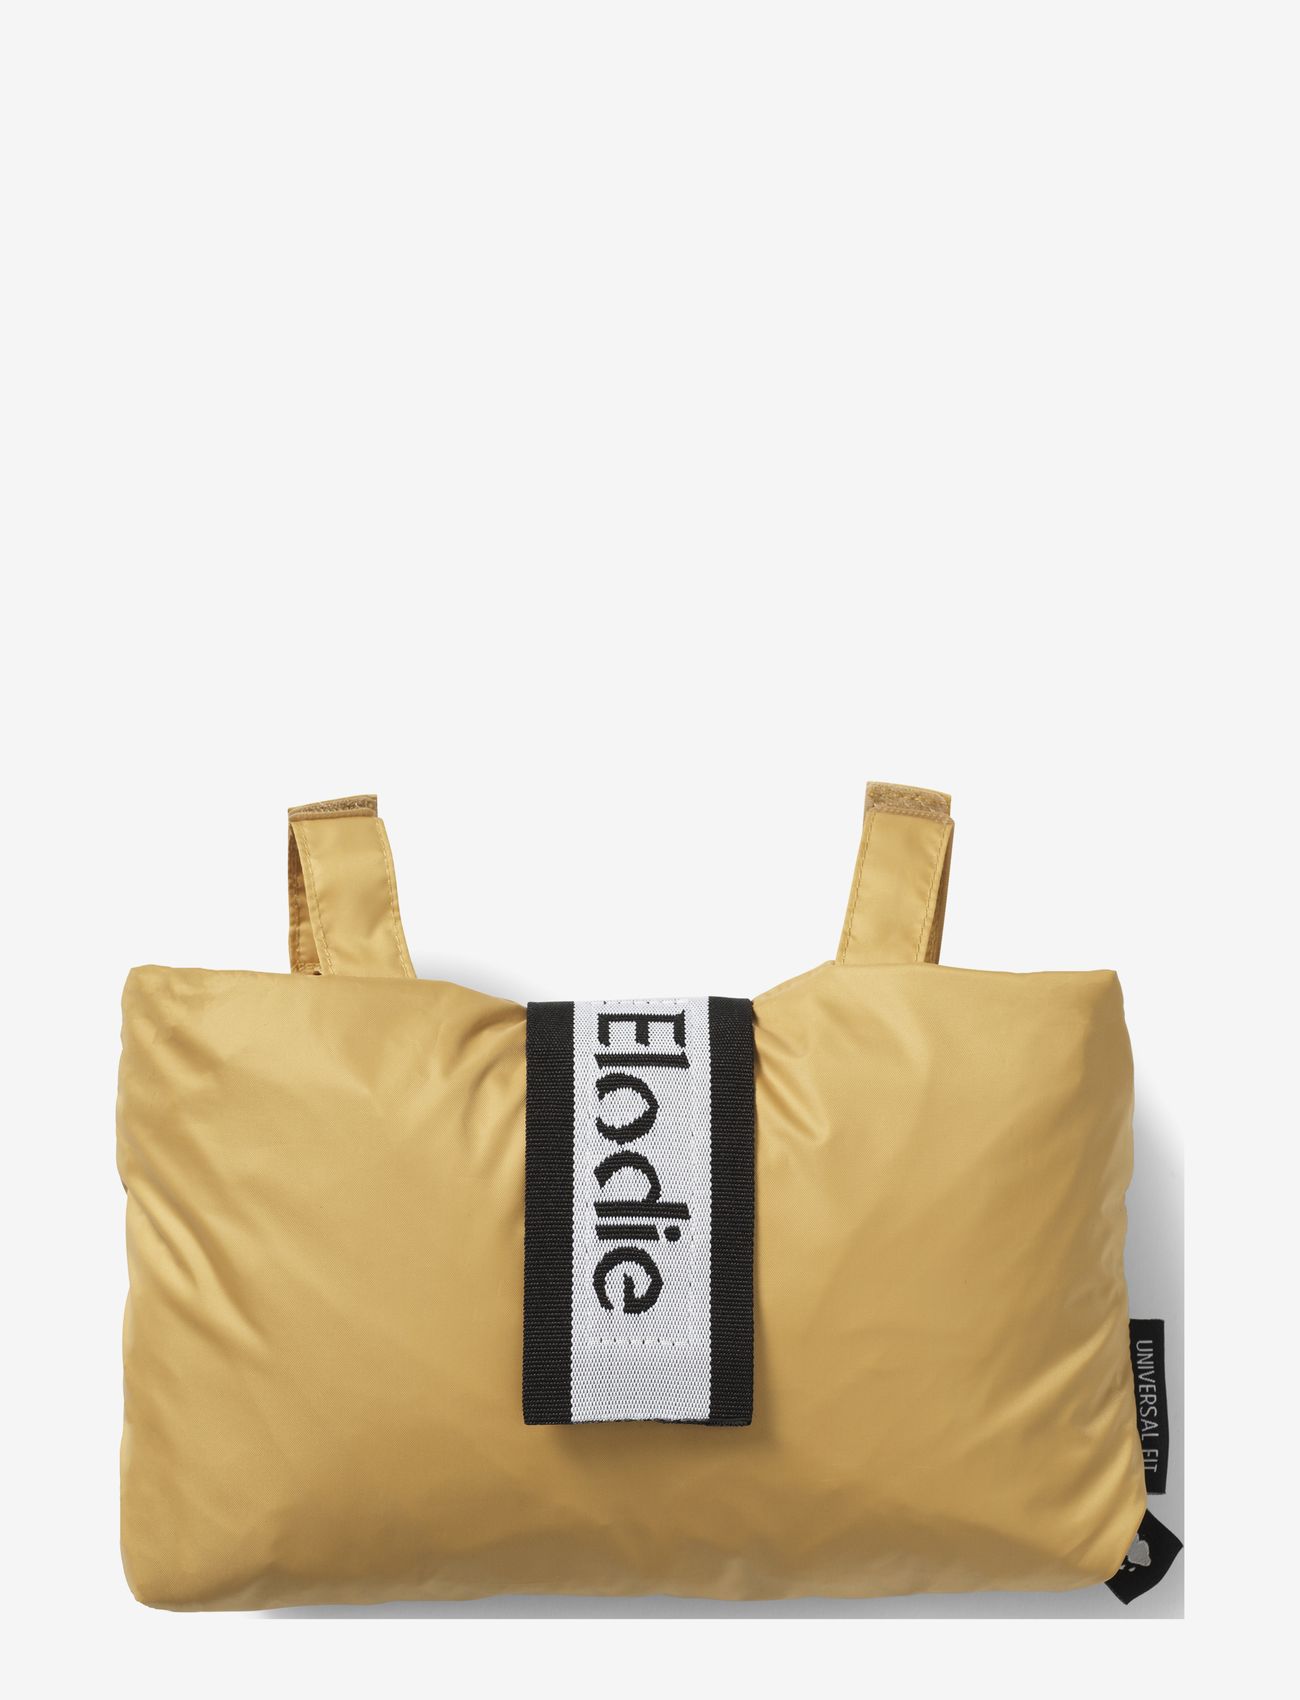 Elodie Details - Rain Cover - Gold - stroller accessories - mustard - 0